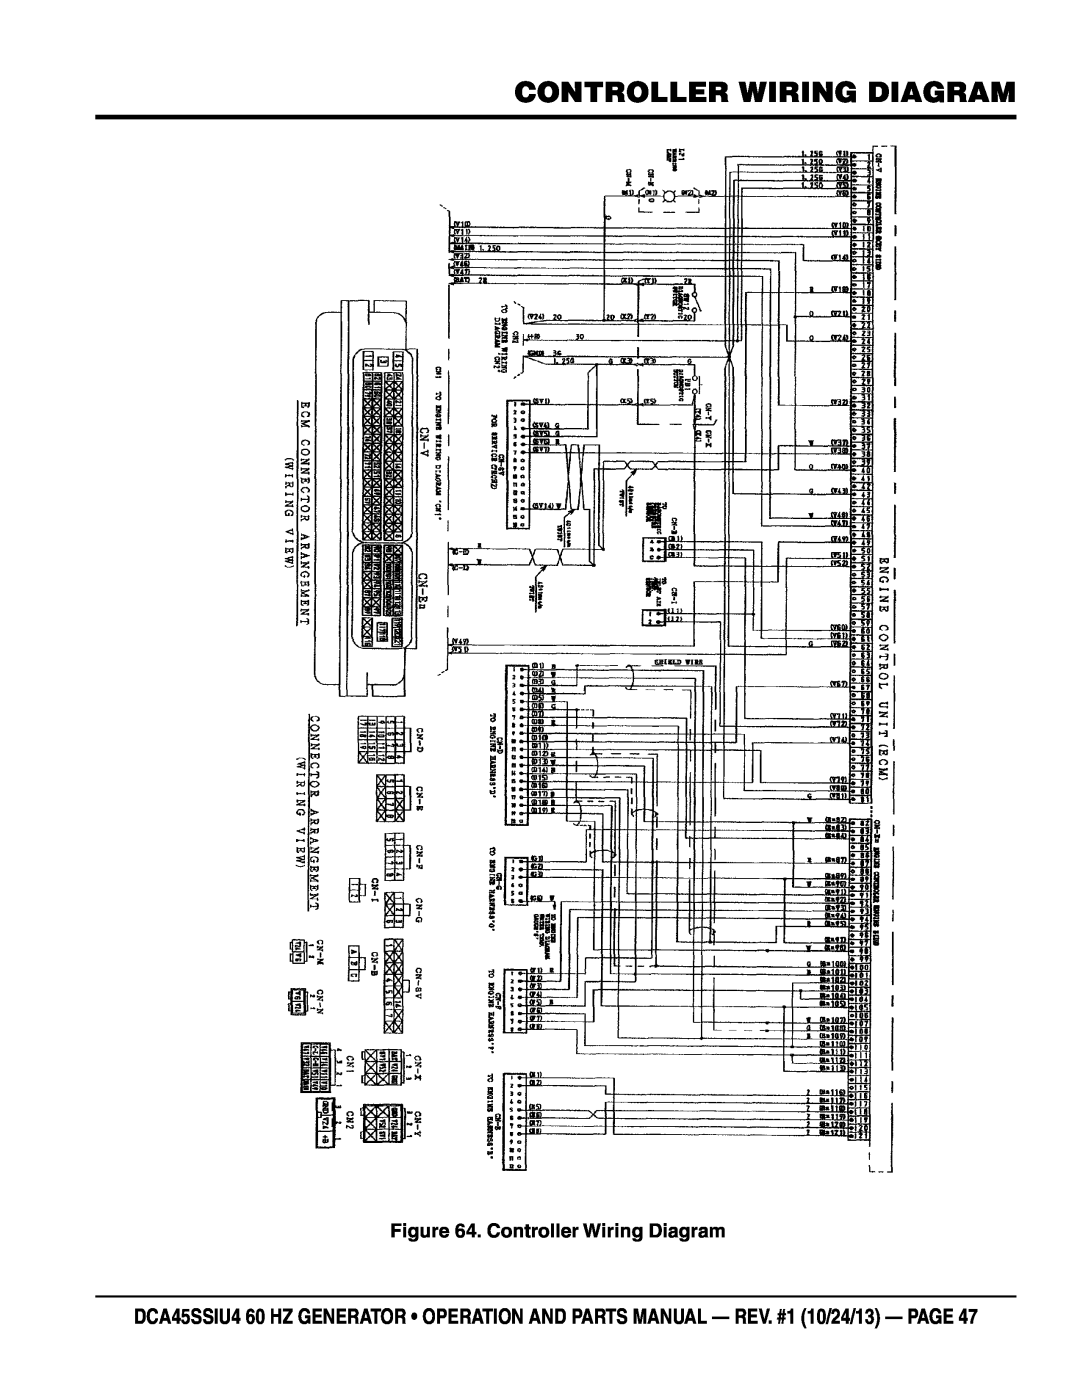 Multiquip dca45ssiu4 manual controller Wiring Diagram, Controller Wiring Diagram 